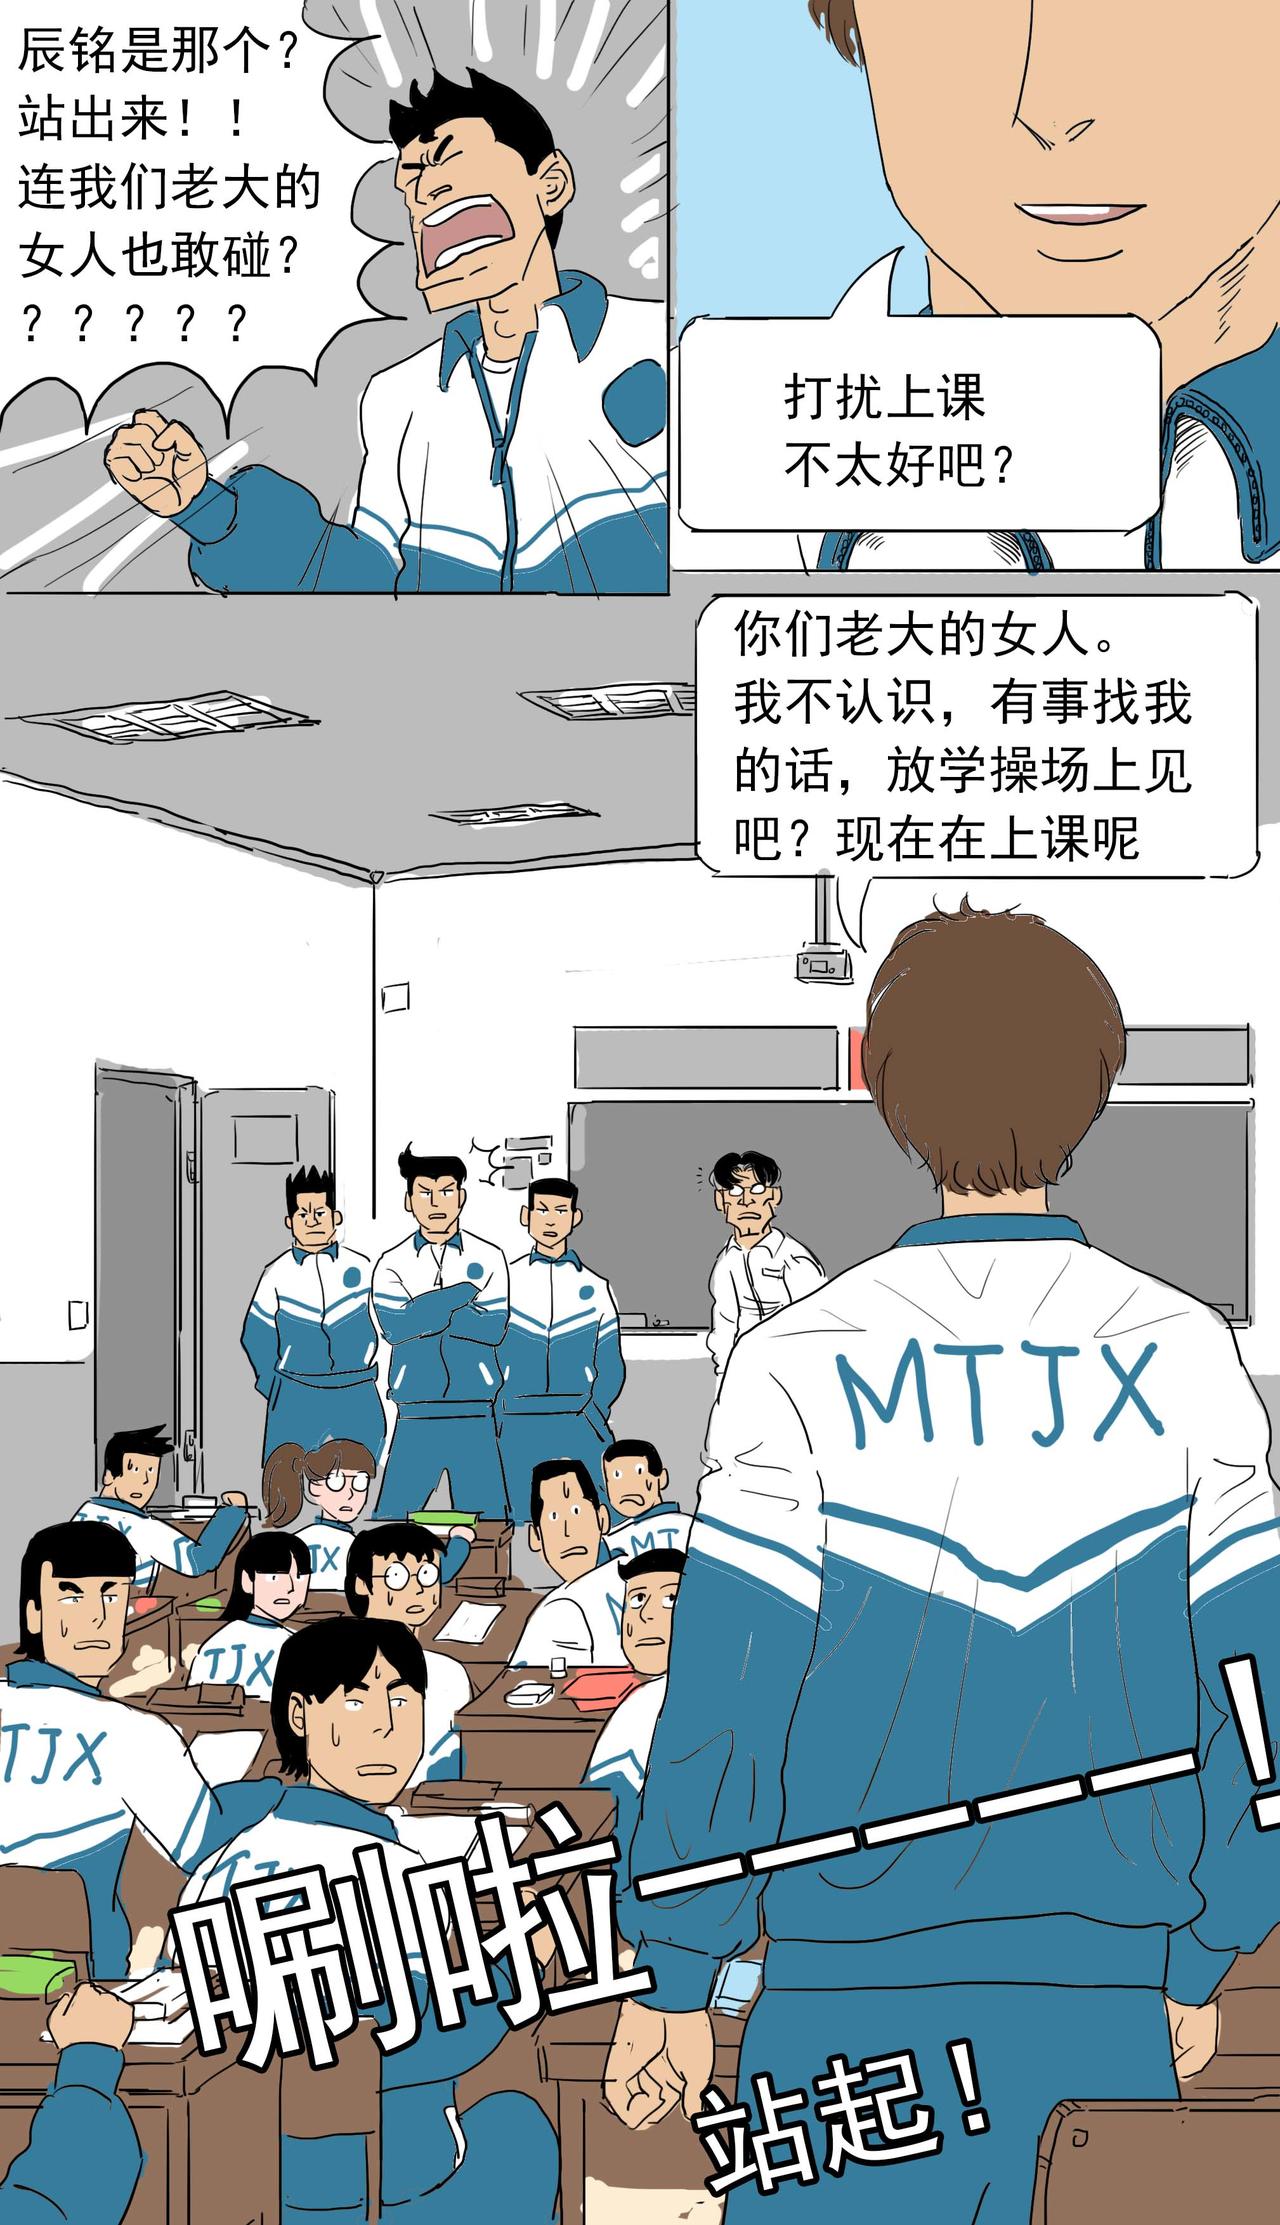 MTJX! - 2高富帥 - 2